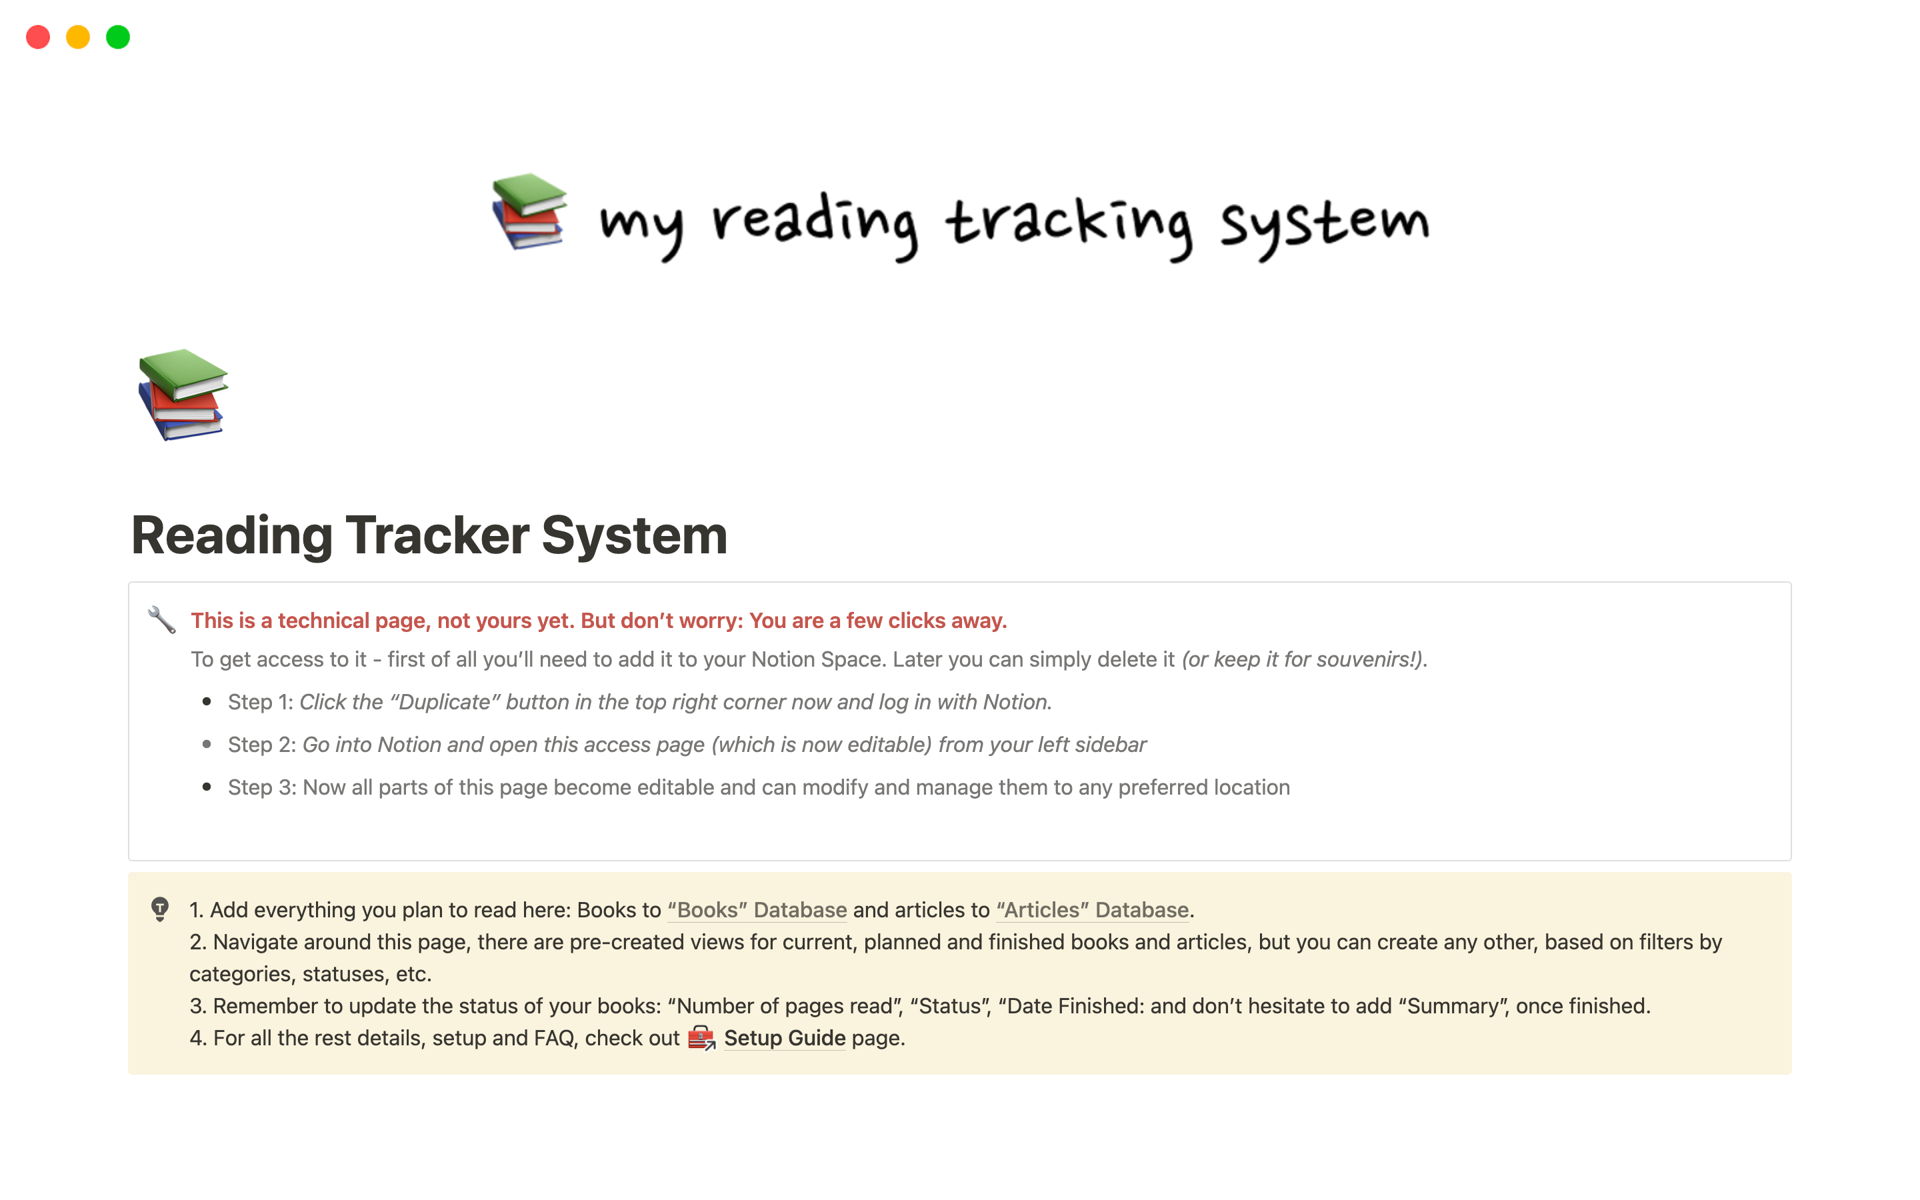 Uma prévia do modelo para Reading Tracker System